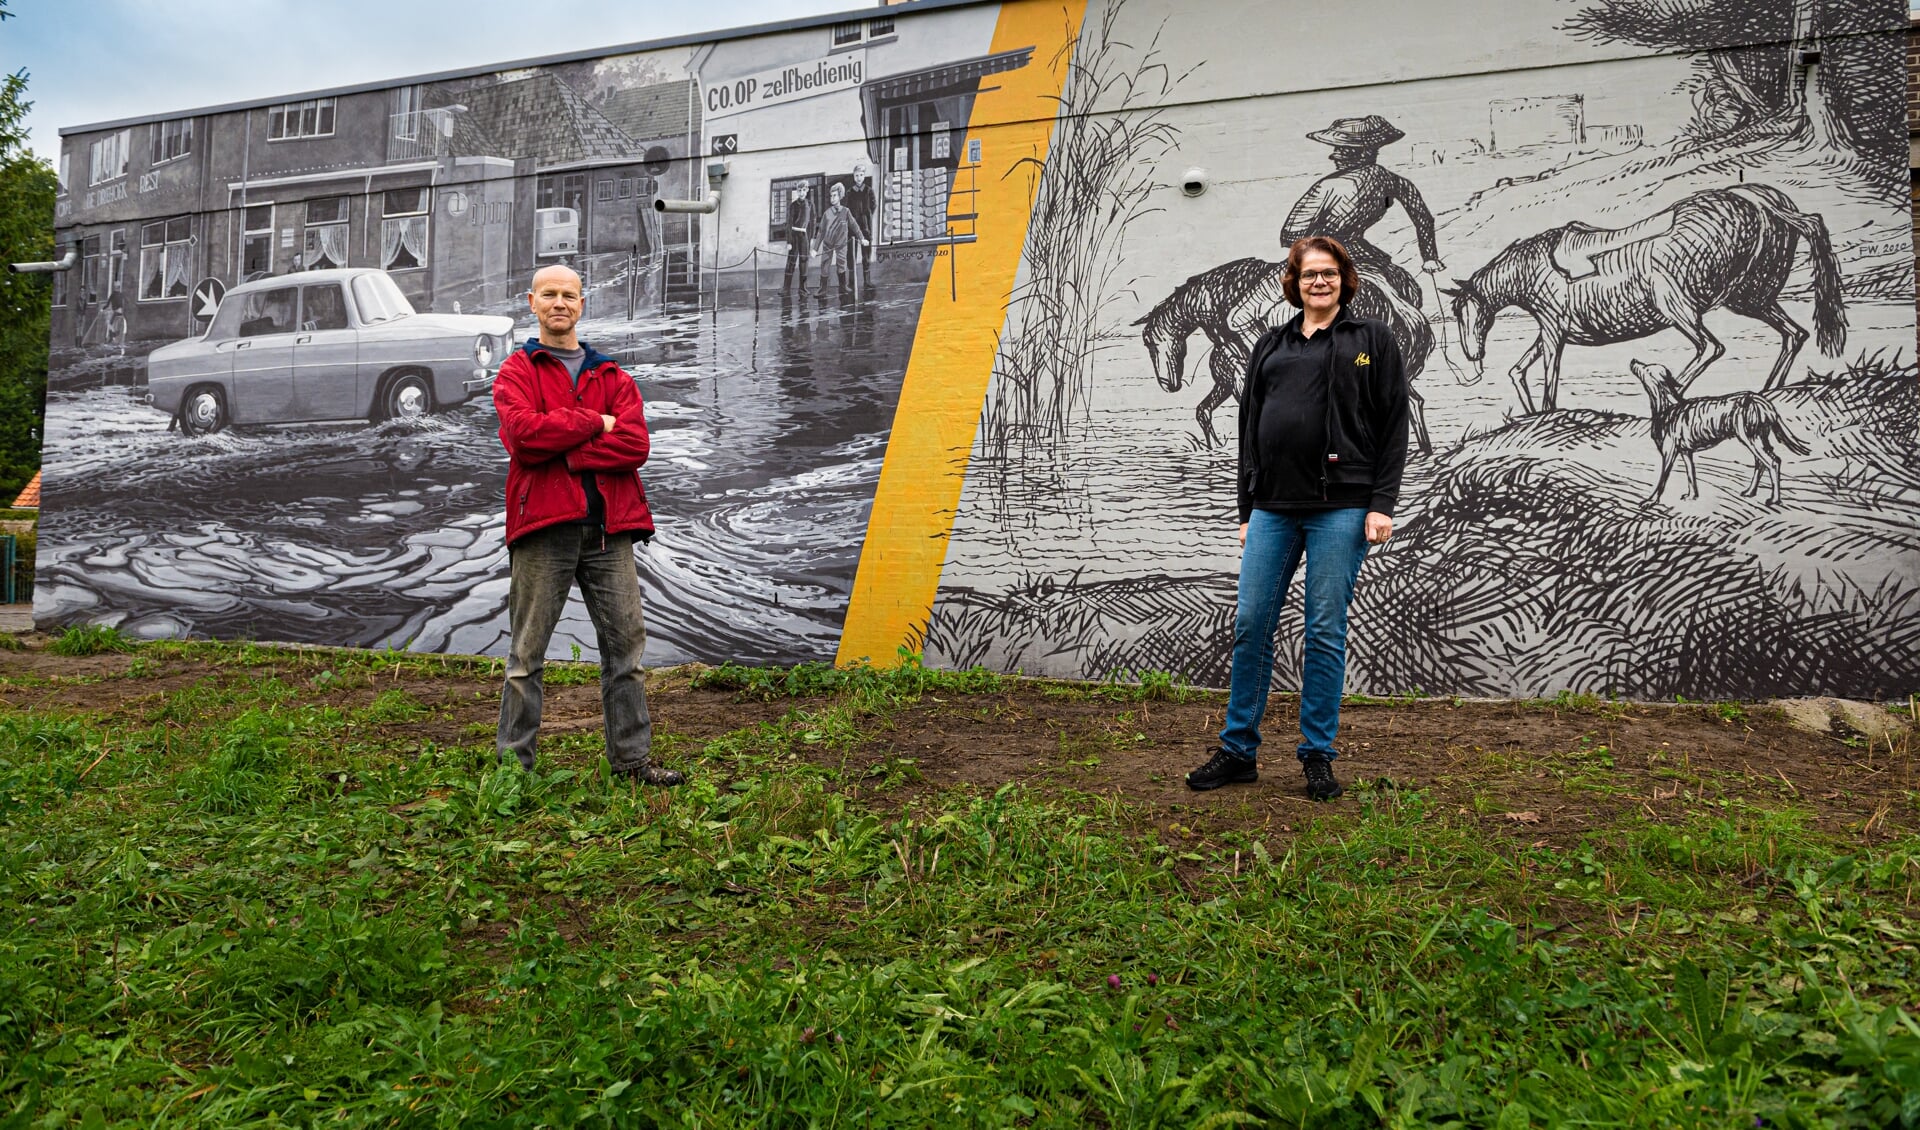 Kunstenaar Paul Wieggers en pandeigenaar Anke Pothoven poseren voor de muurschildering. Foto: Rick Mellink